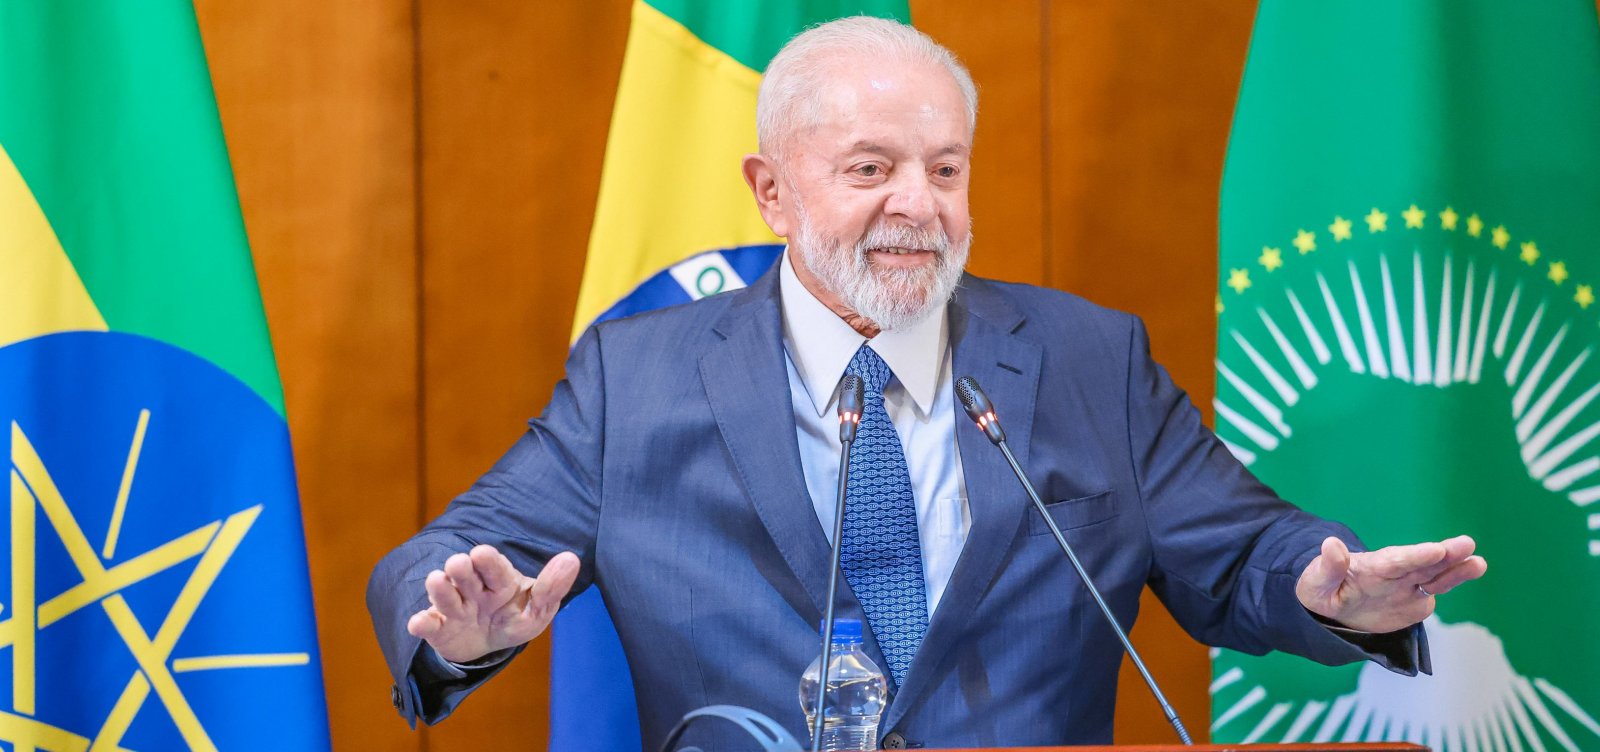 Para tentar reverter greve nas universidades, Lula anuncia R$ 5,5 bi em investimentos